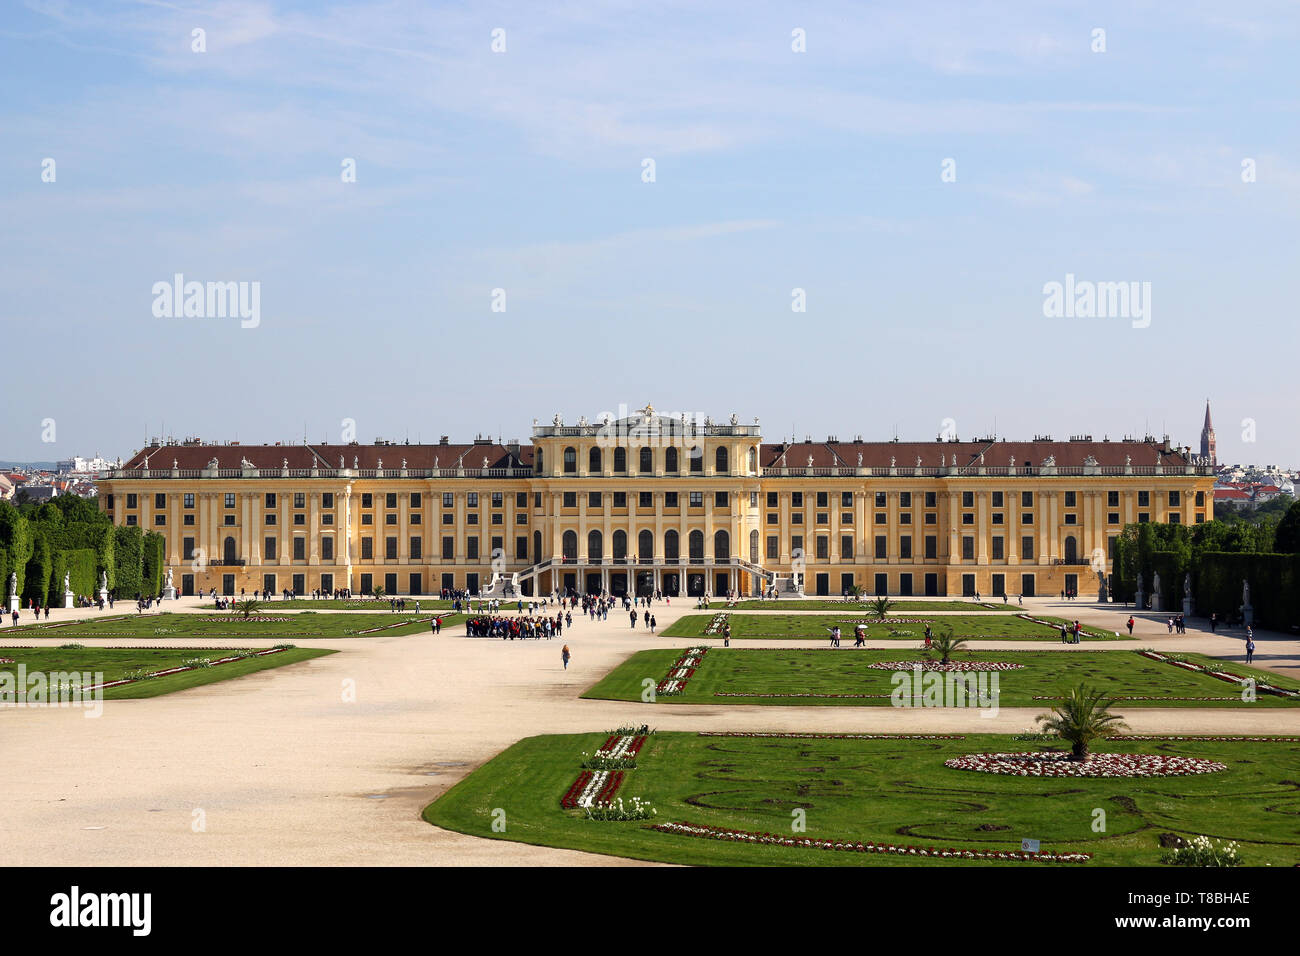 Schonbrunn Palace or Schloss Schoenbrunn Vienna Austria Stock Photo